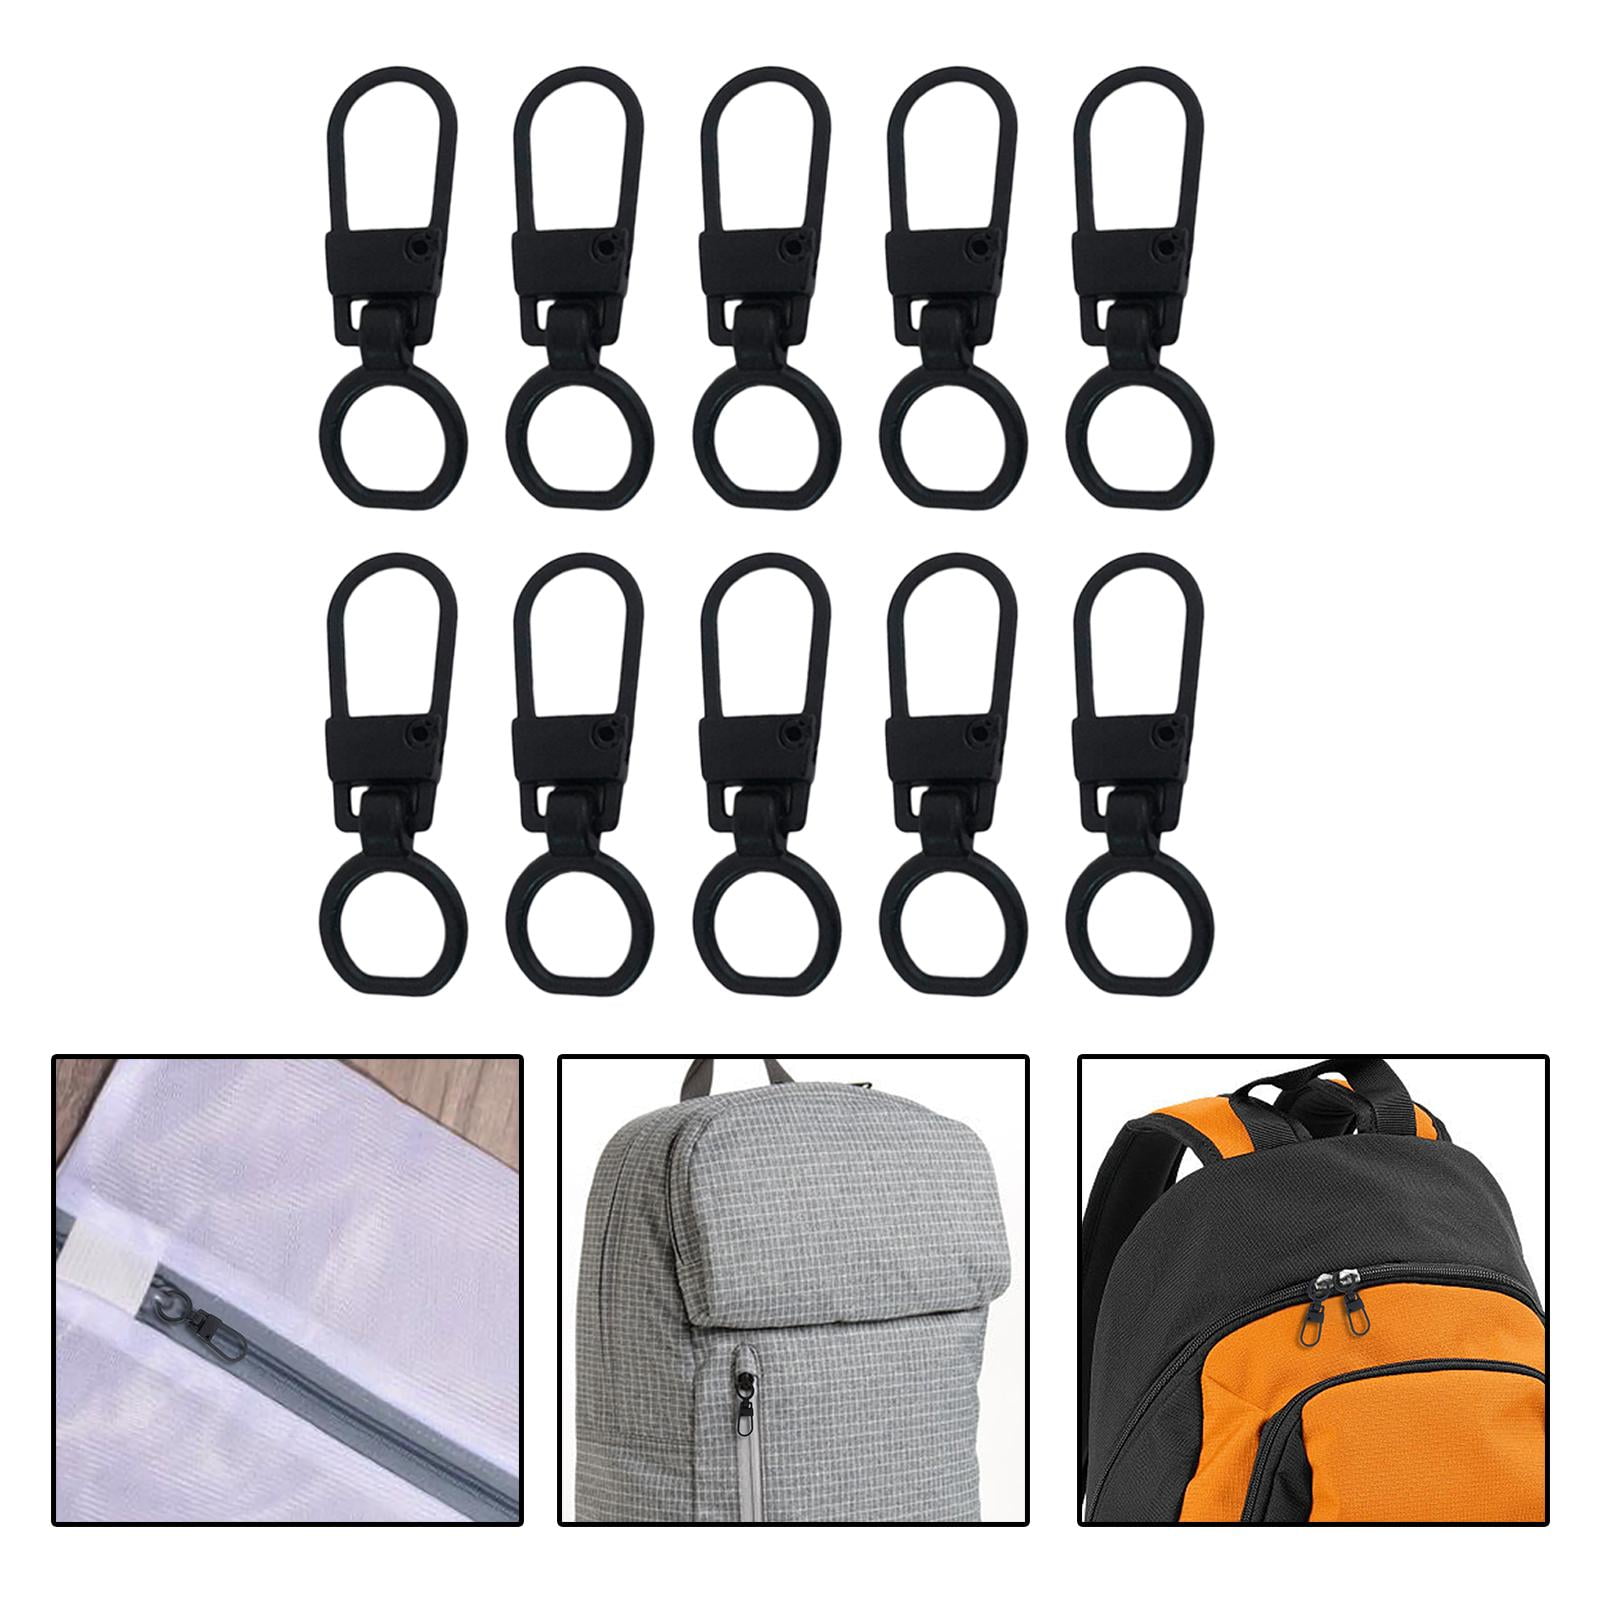 5pcs/set Detachable&replaceable Zipper Pulls For Luggages